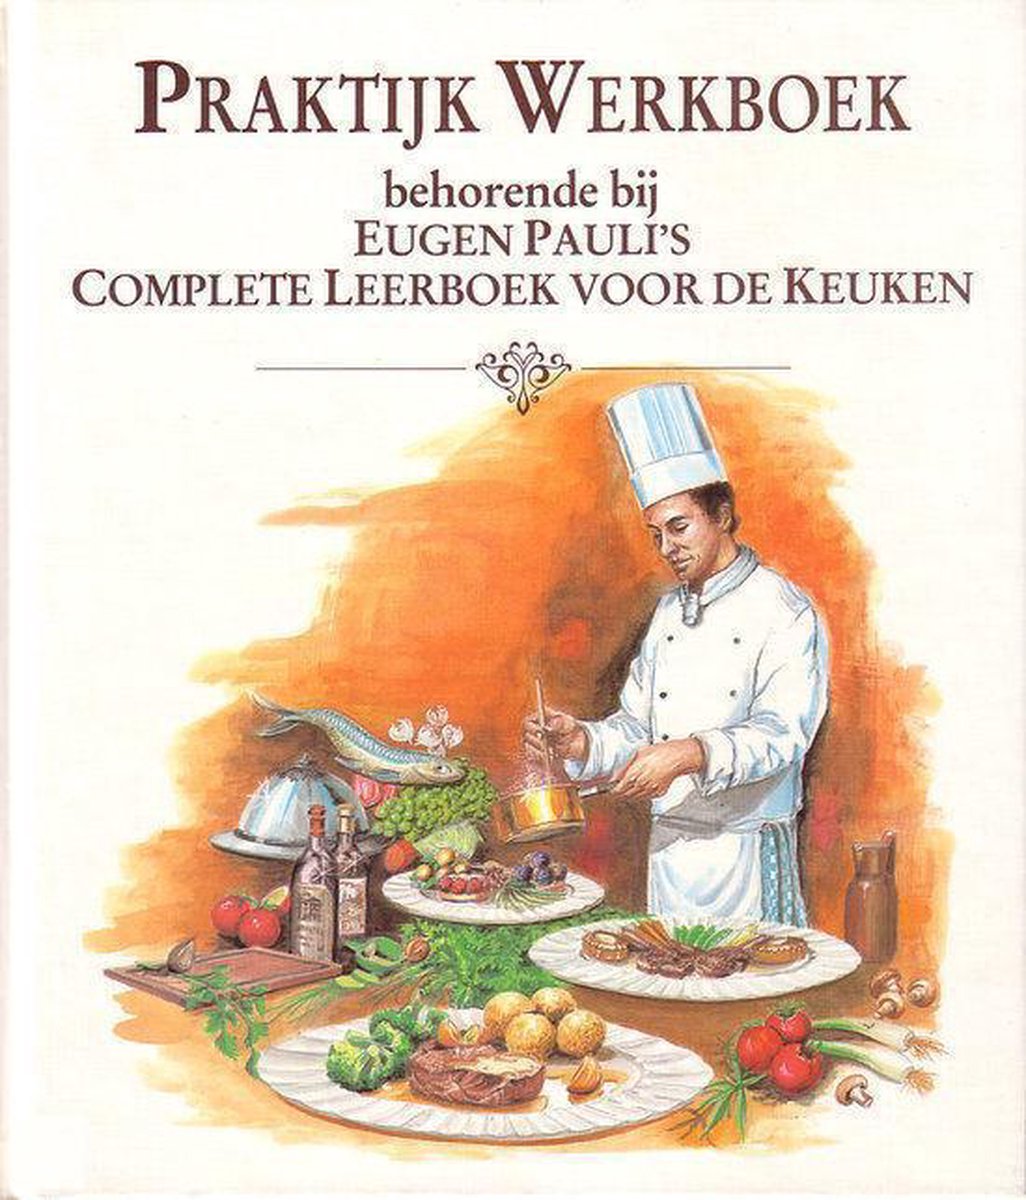 Praktijk-werkboek behorende bij Eugen Pauli's complete leerboek voor de keuken